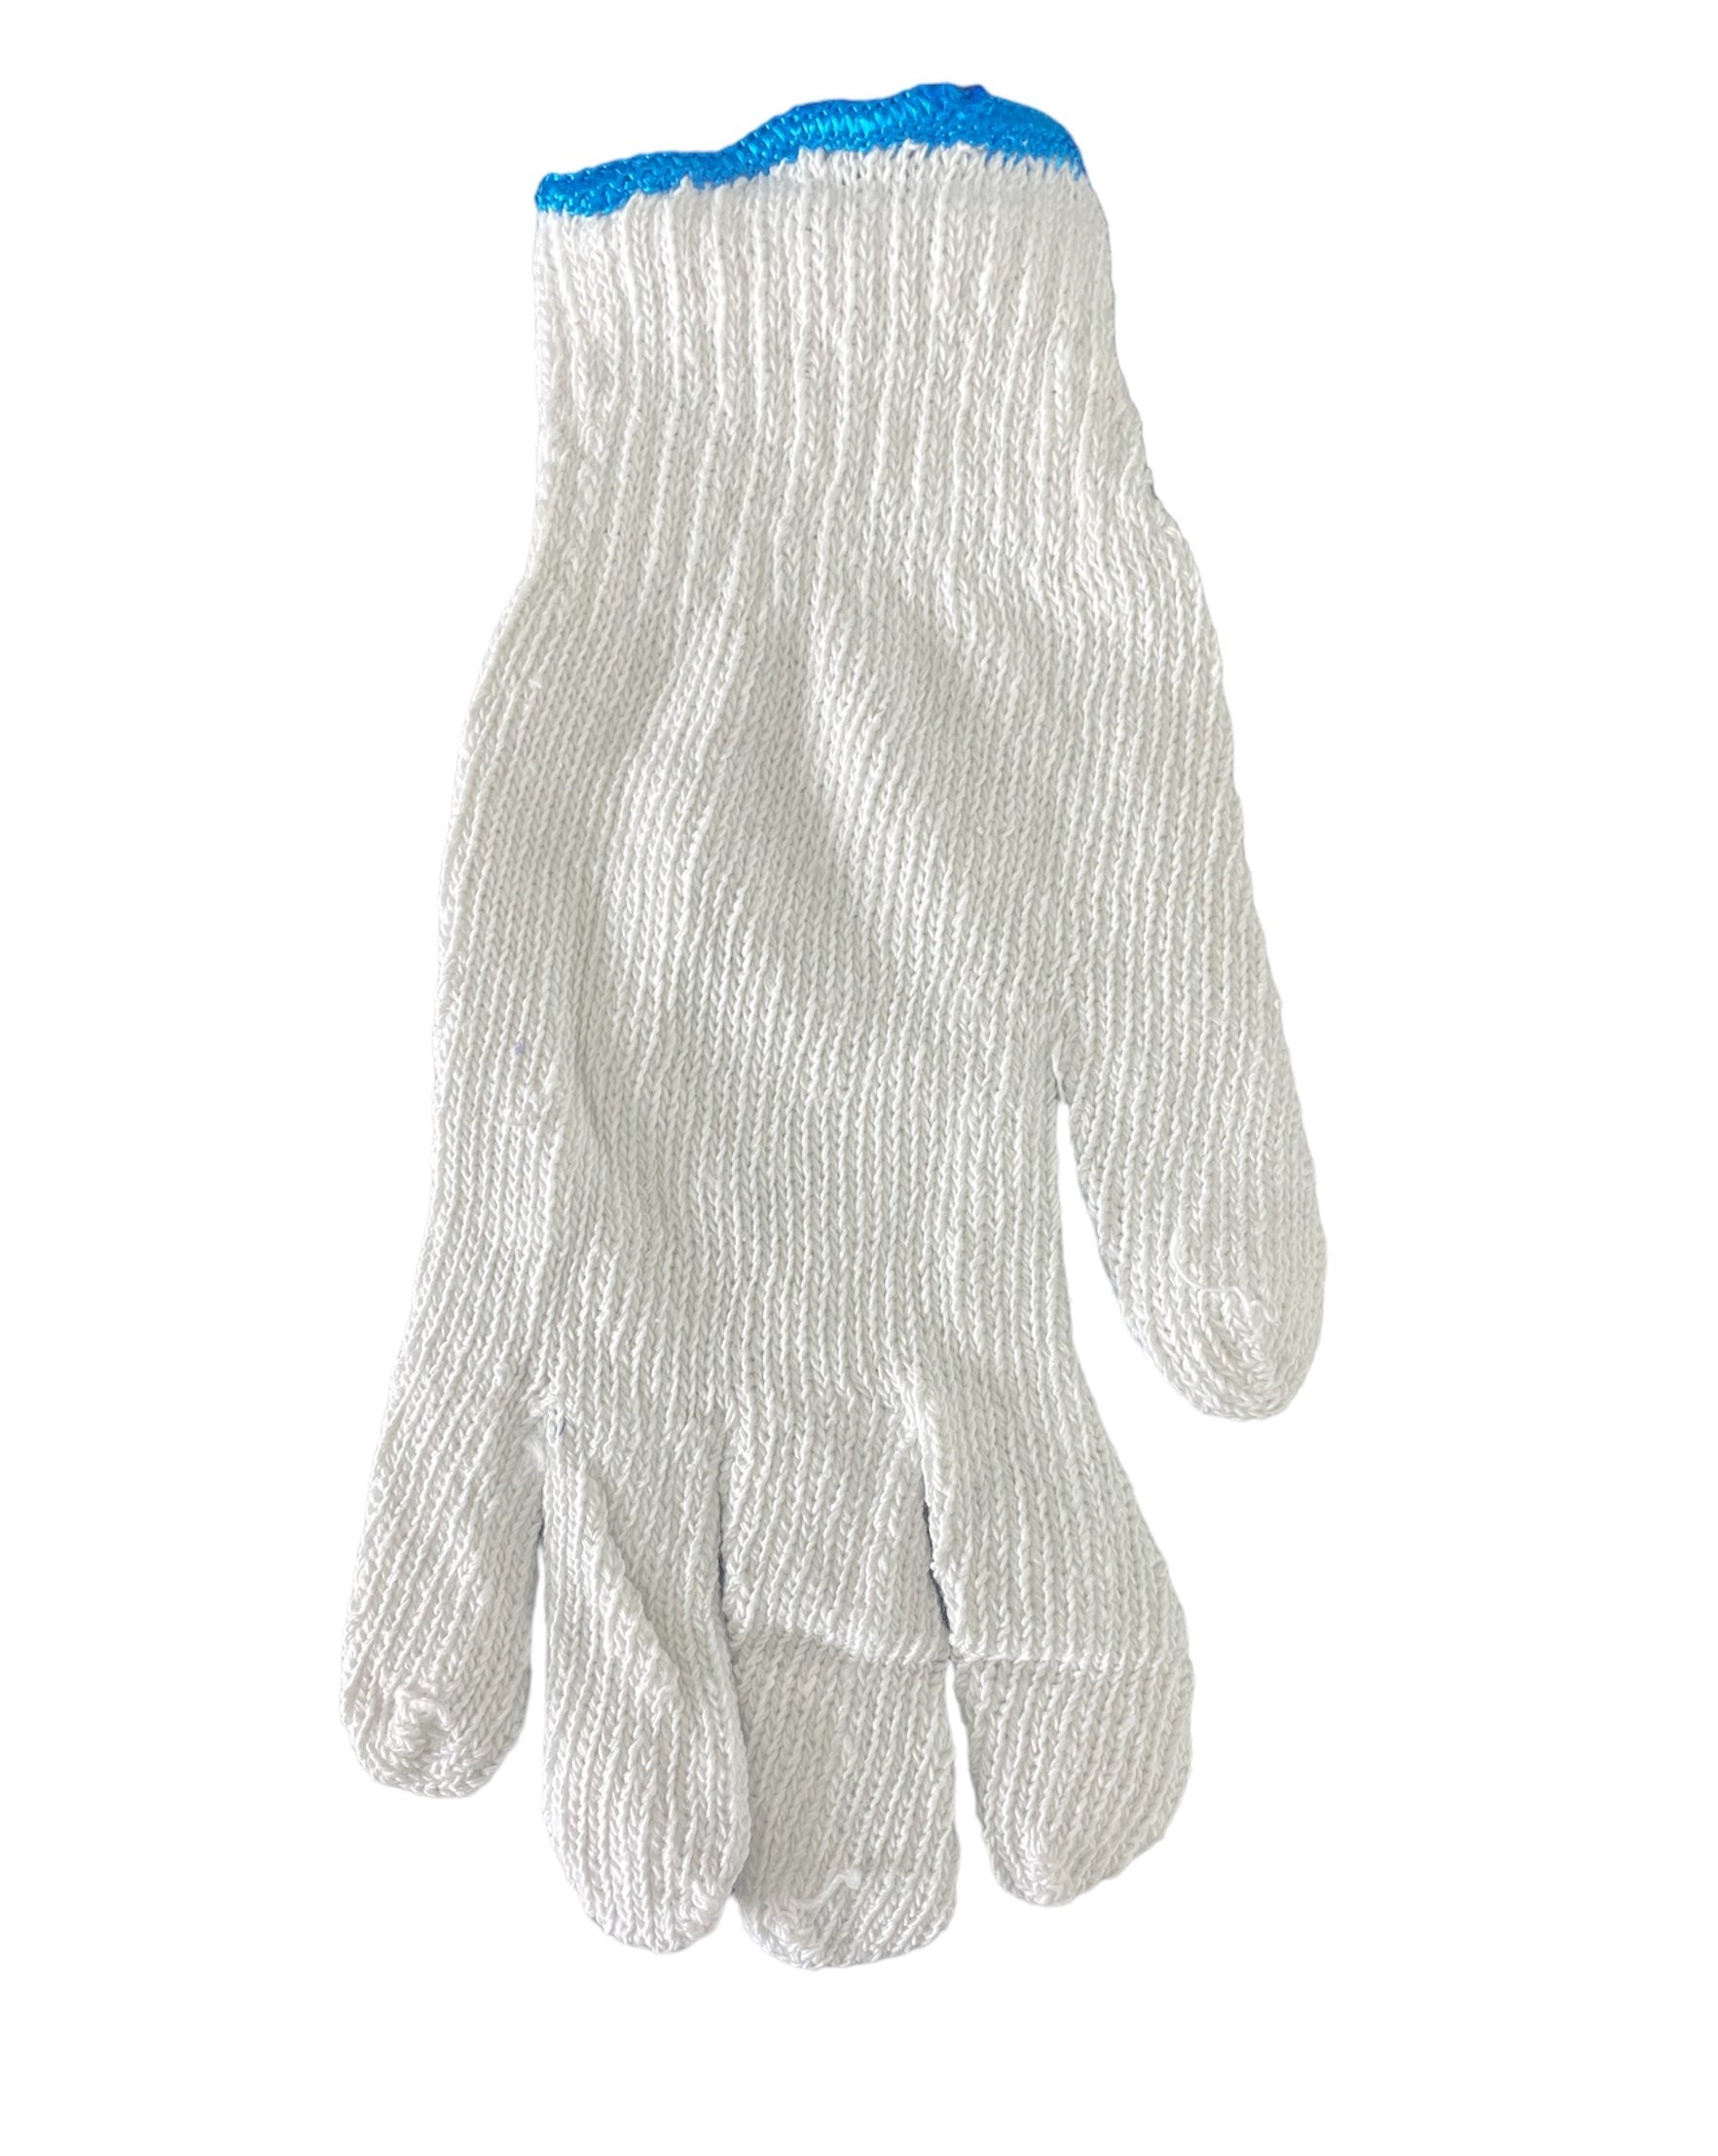 Cotton Under-Gloves